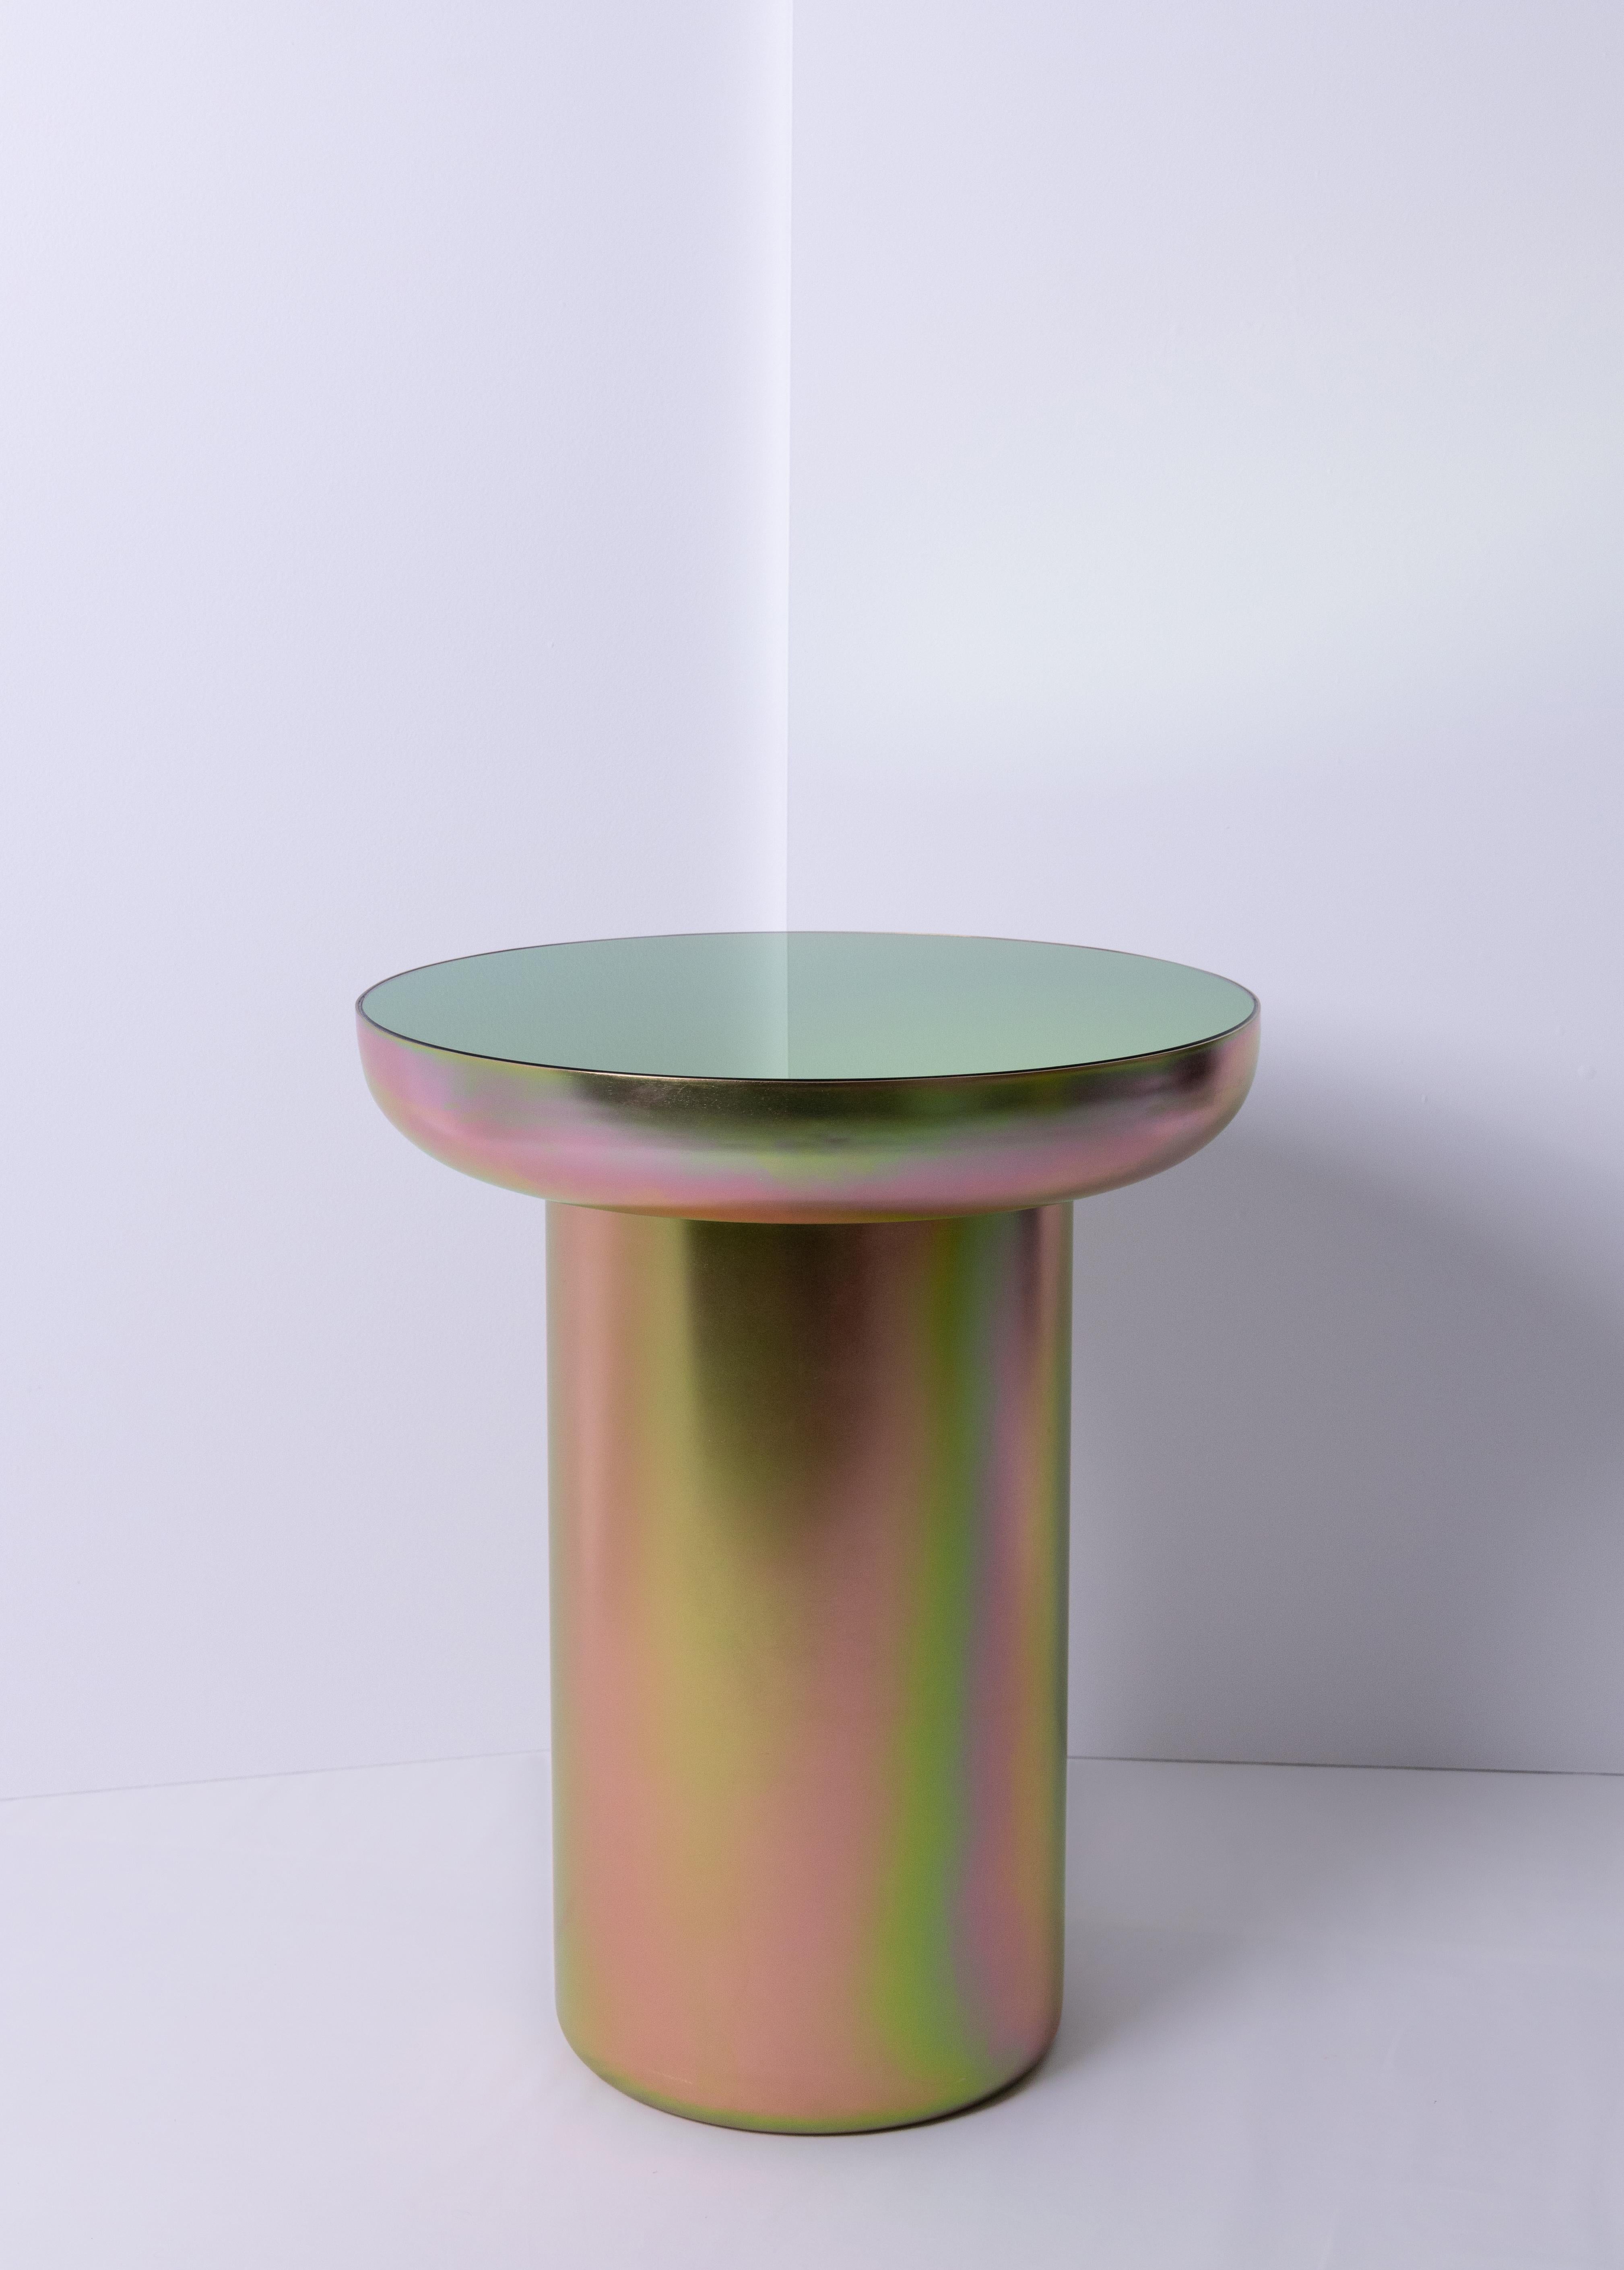 Mood side zinc ist ein visuell leichter, skulptural starker Tisch, der mit einem Finish beschichtet ist, das die Form erhöht und die Farbe feiert. Der Sockel ist mit einer Zinkbeschichtung versehen, die es dem Objekt ermöglicht, die Farben und Töne